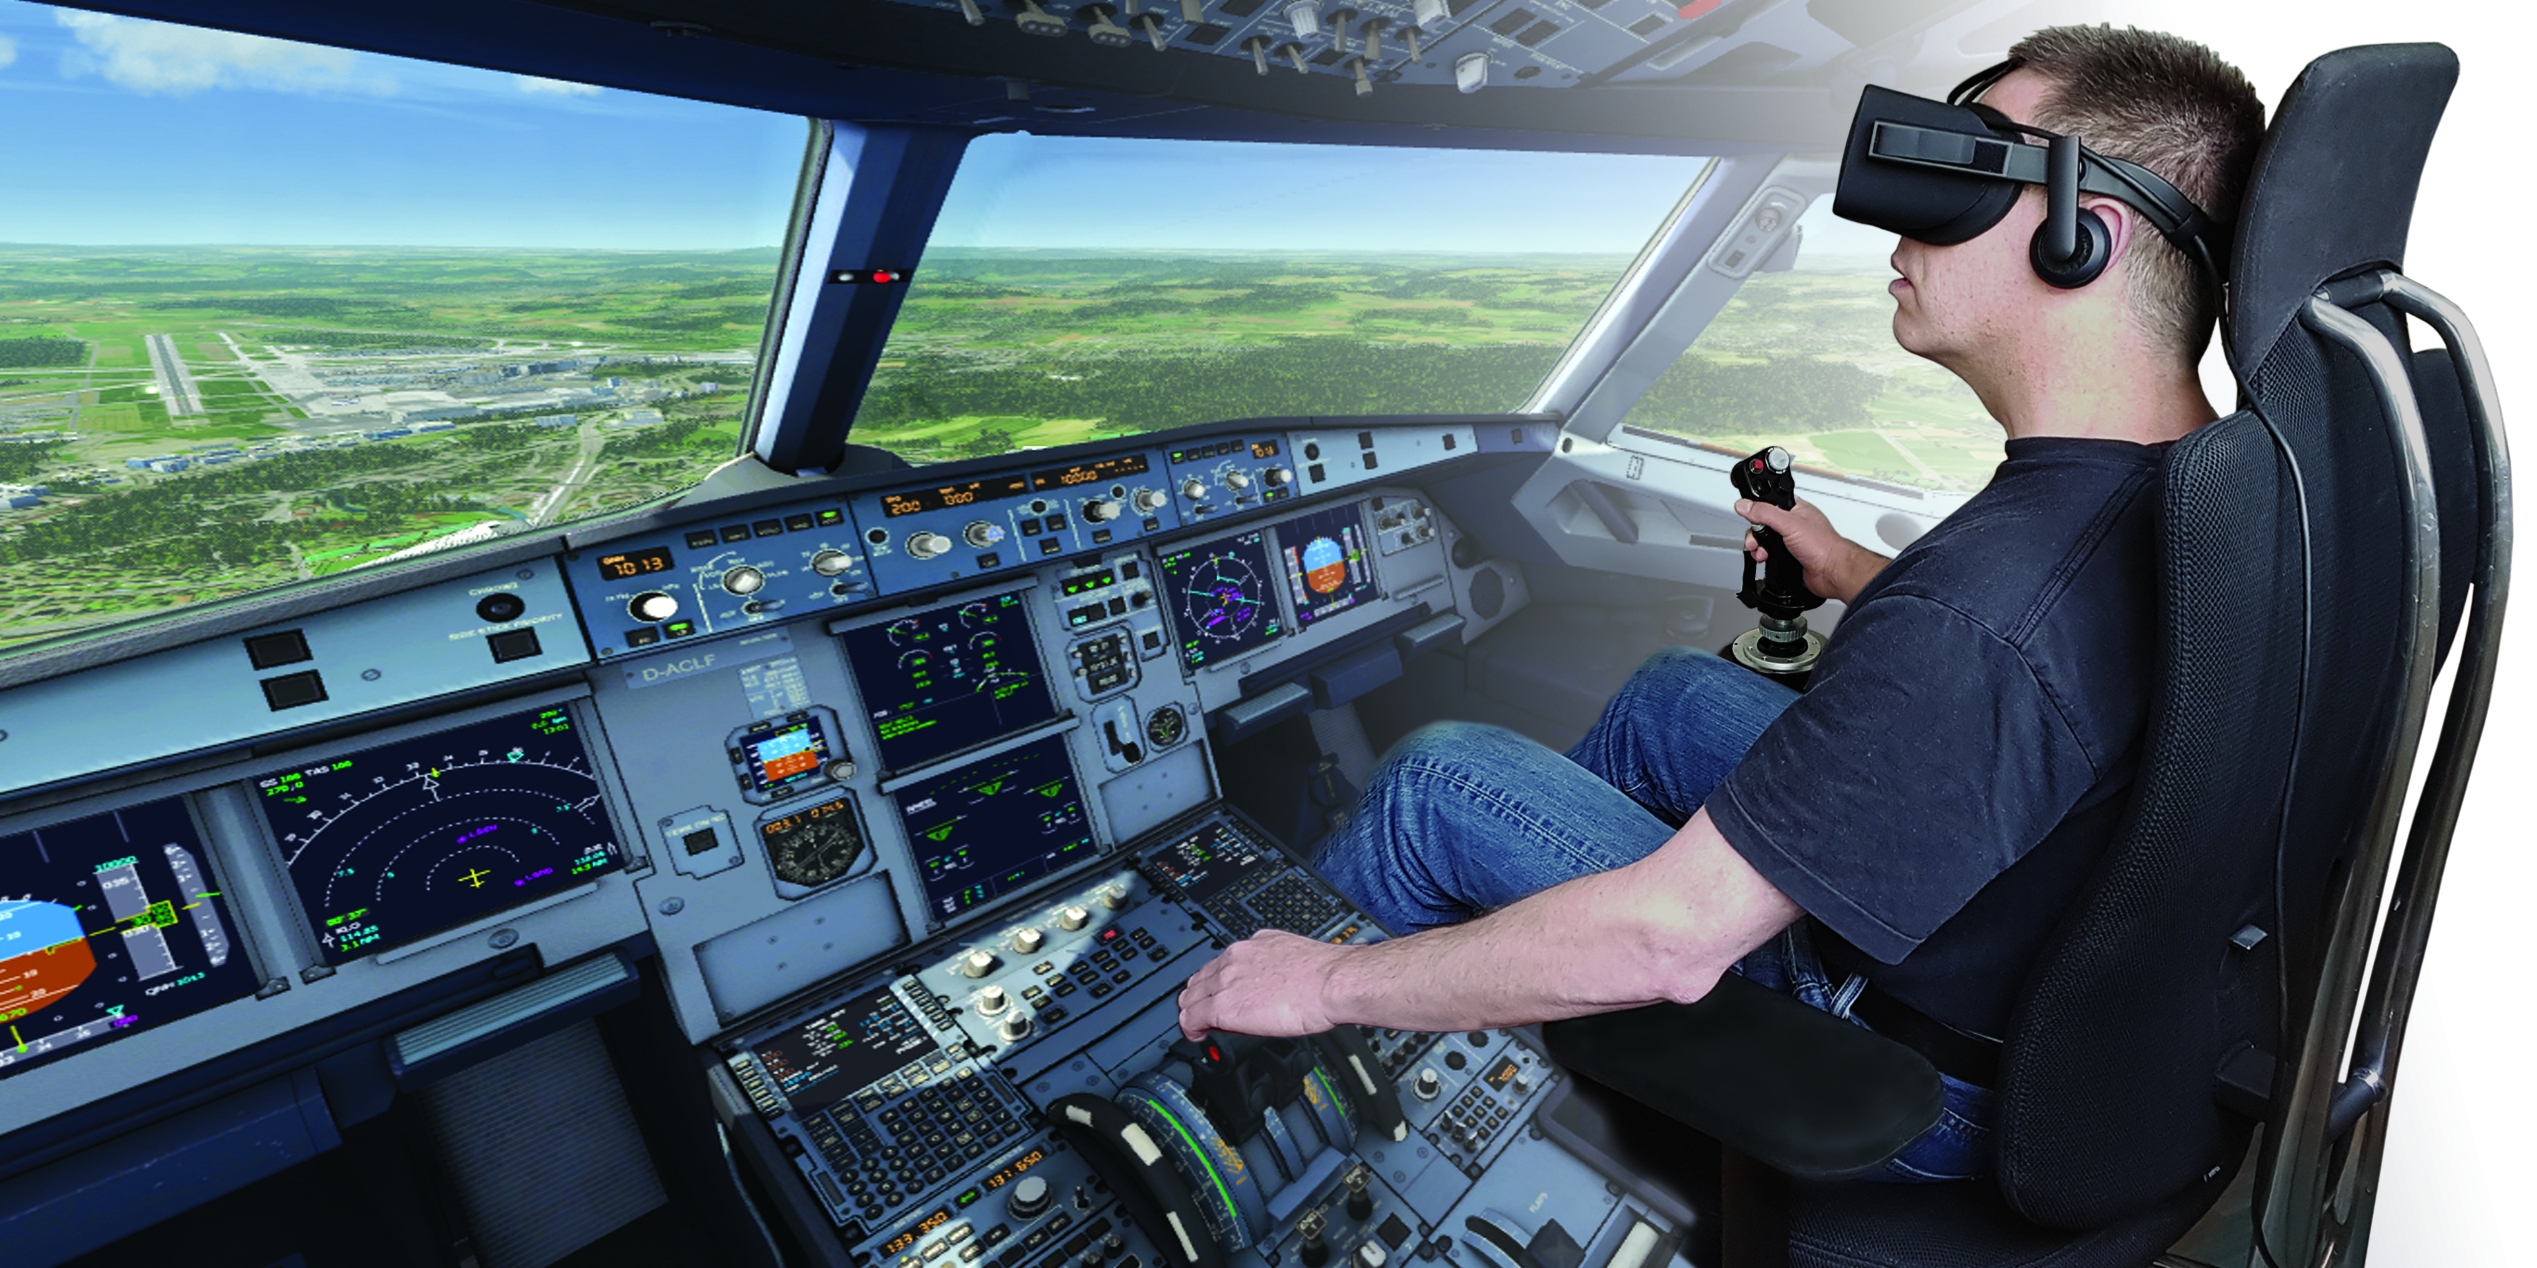 Самолеты vr. Кабина пилота VR. Тренажер для пилотов. Тренажер пилота самолета виртуальной реальности. Виртуальная реальность в авиации.